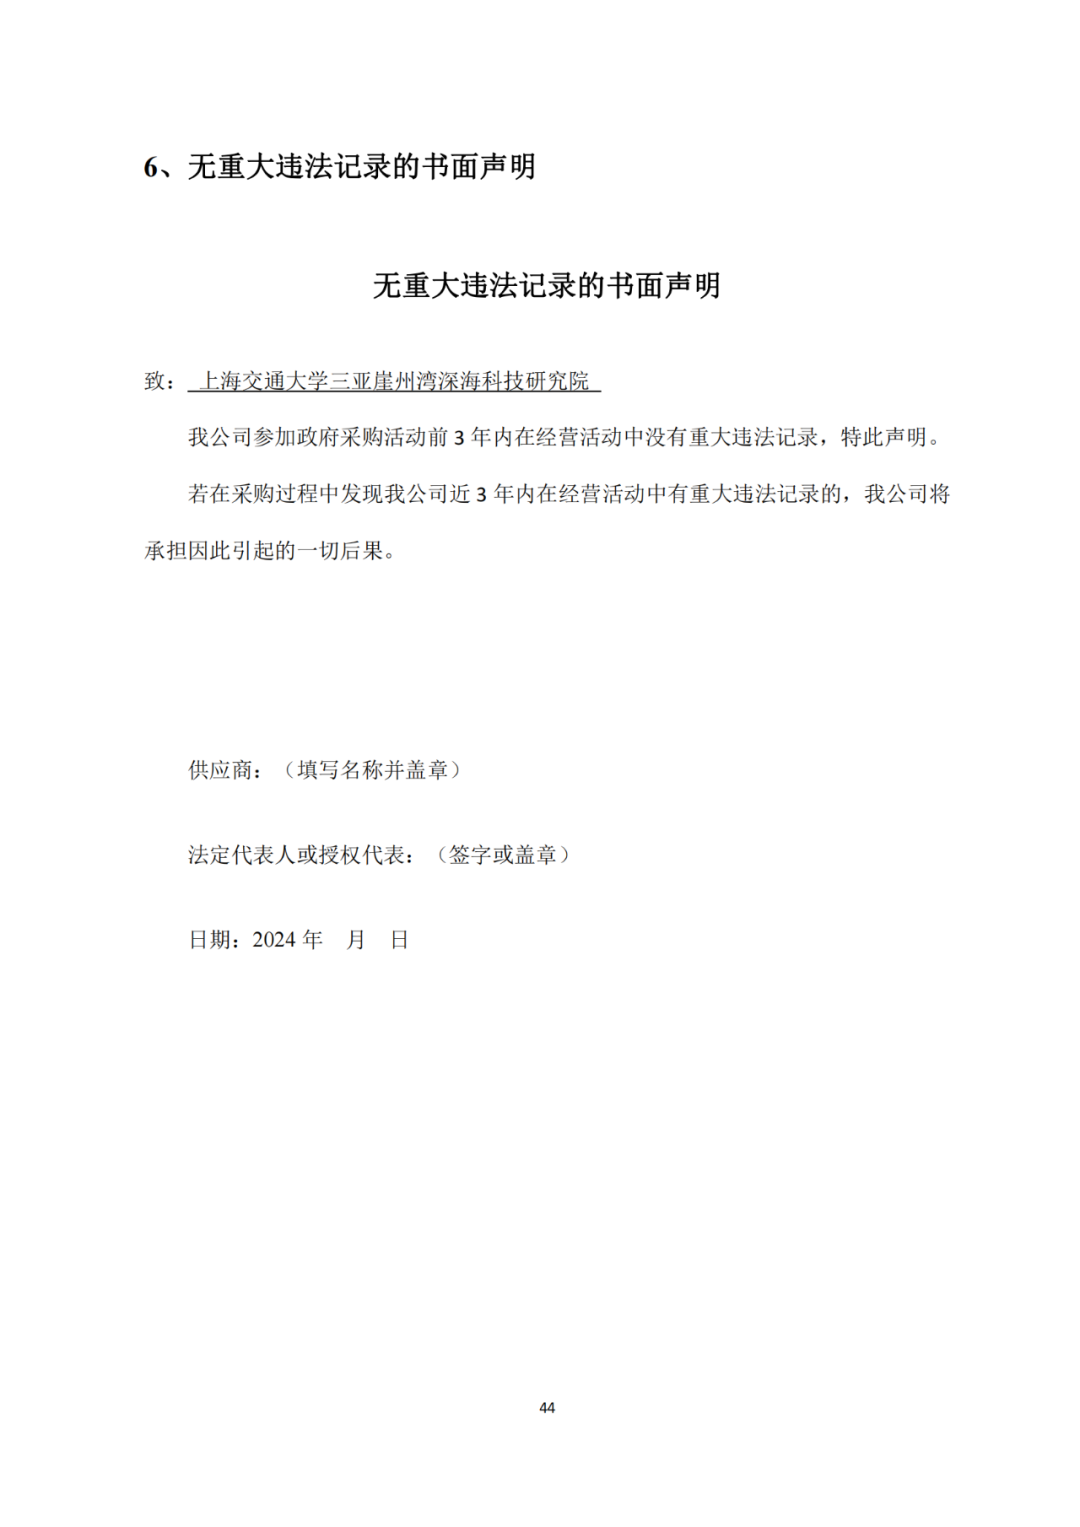 发明专利4980元，实用新型1800元，外观500元，上海一研究院采购知识产权代理成交公告